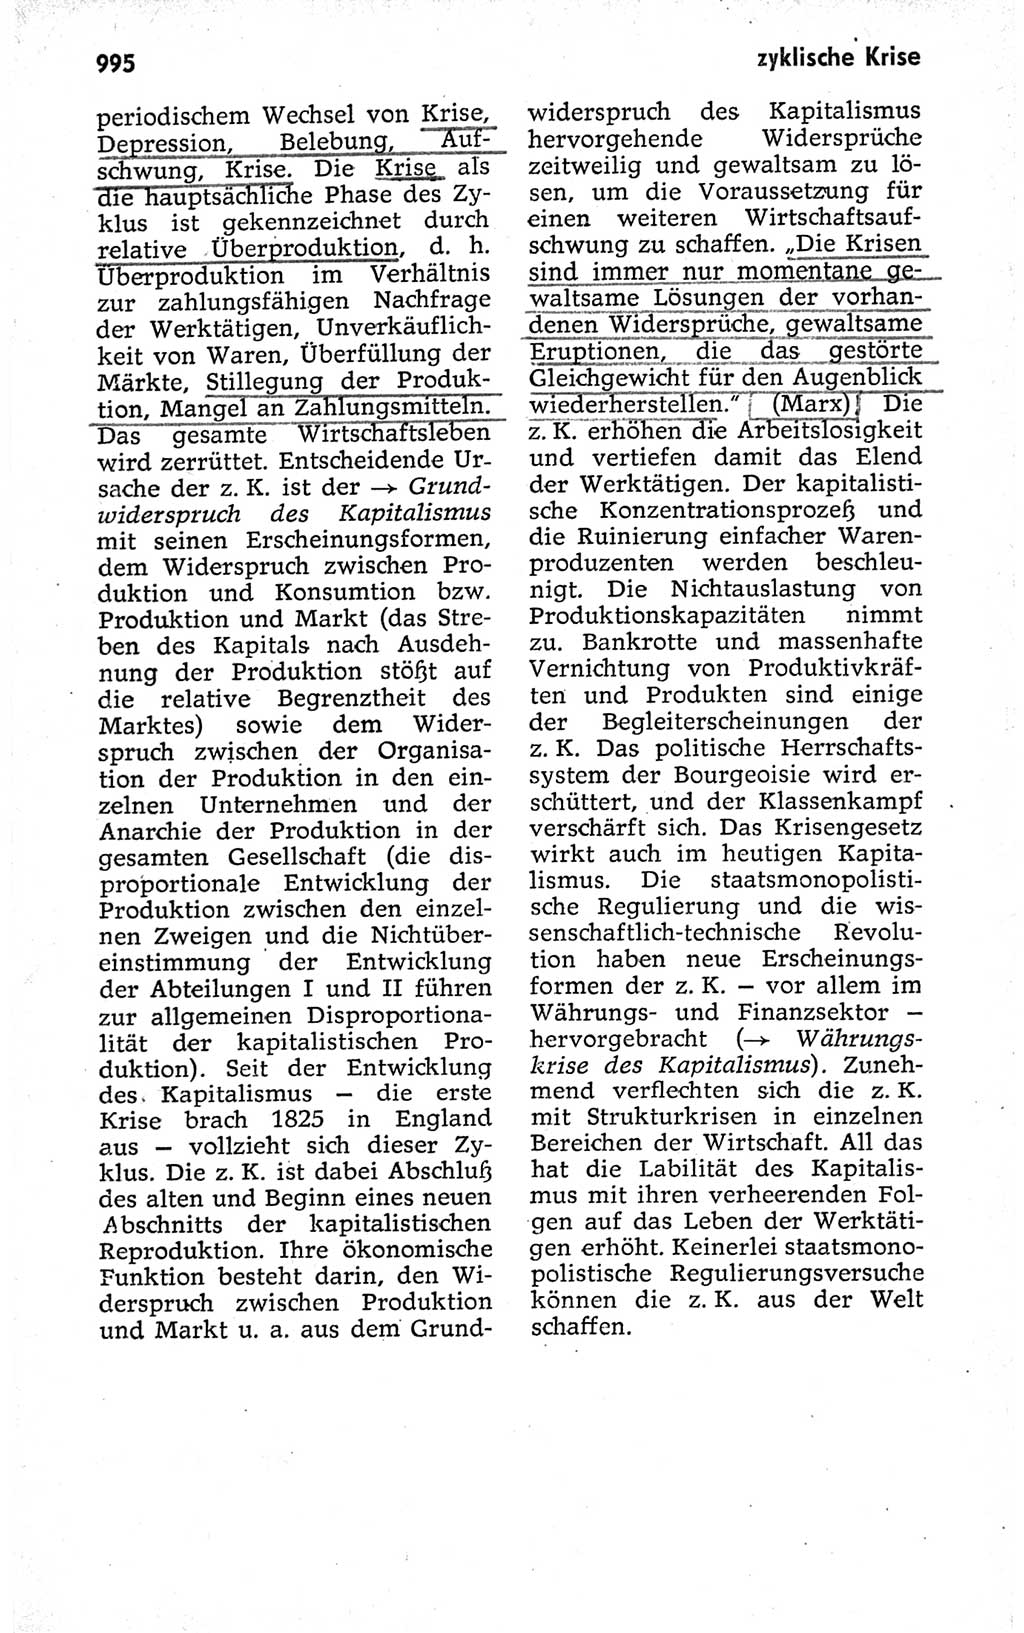 Kleines politisches Wörterbuch [Deutsche Demokratische Republik (DDR)] 1973, Seite 995 (Kl. pol. Wb. DDR 1973, S. 995)